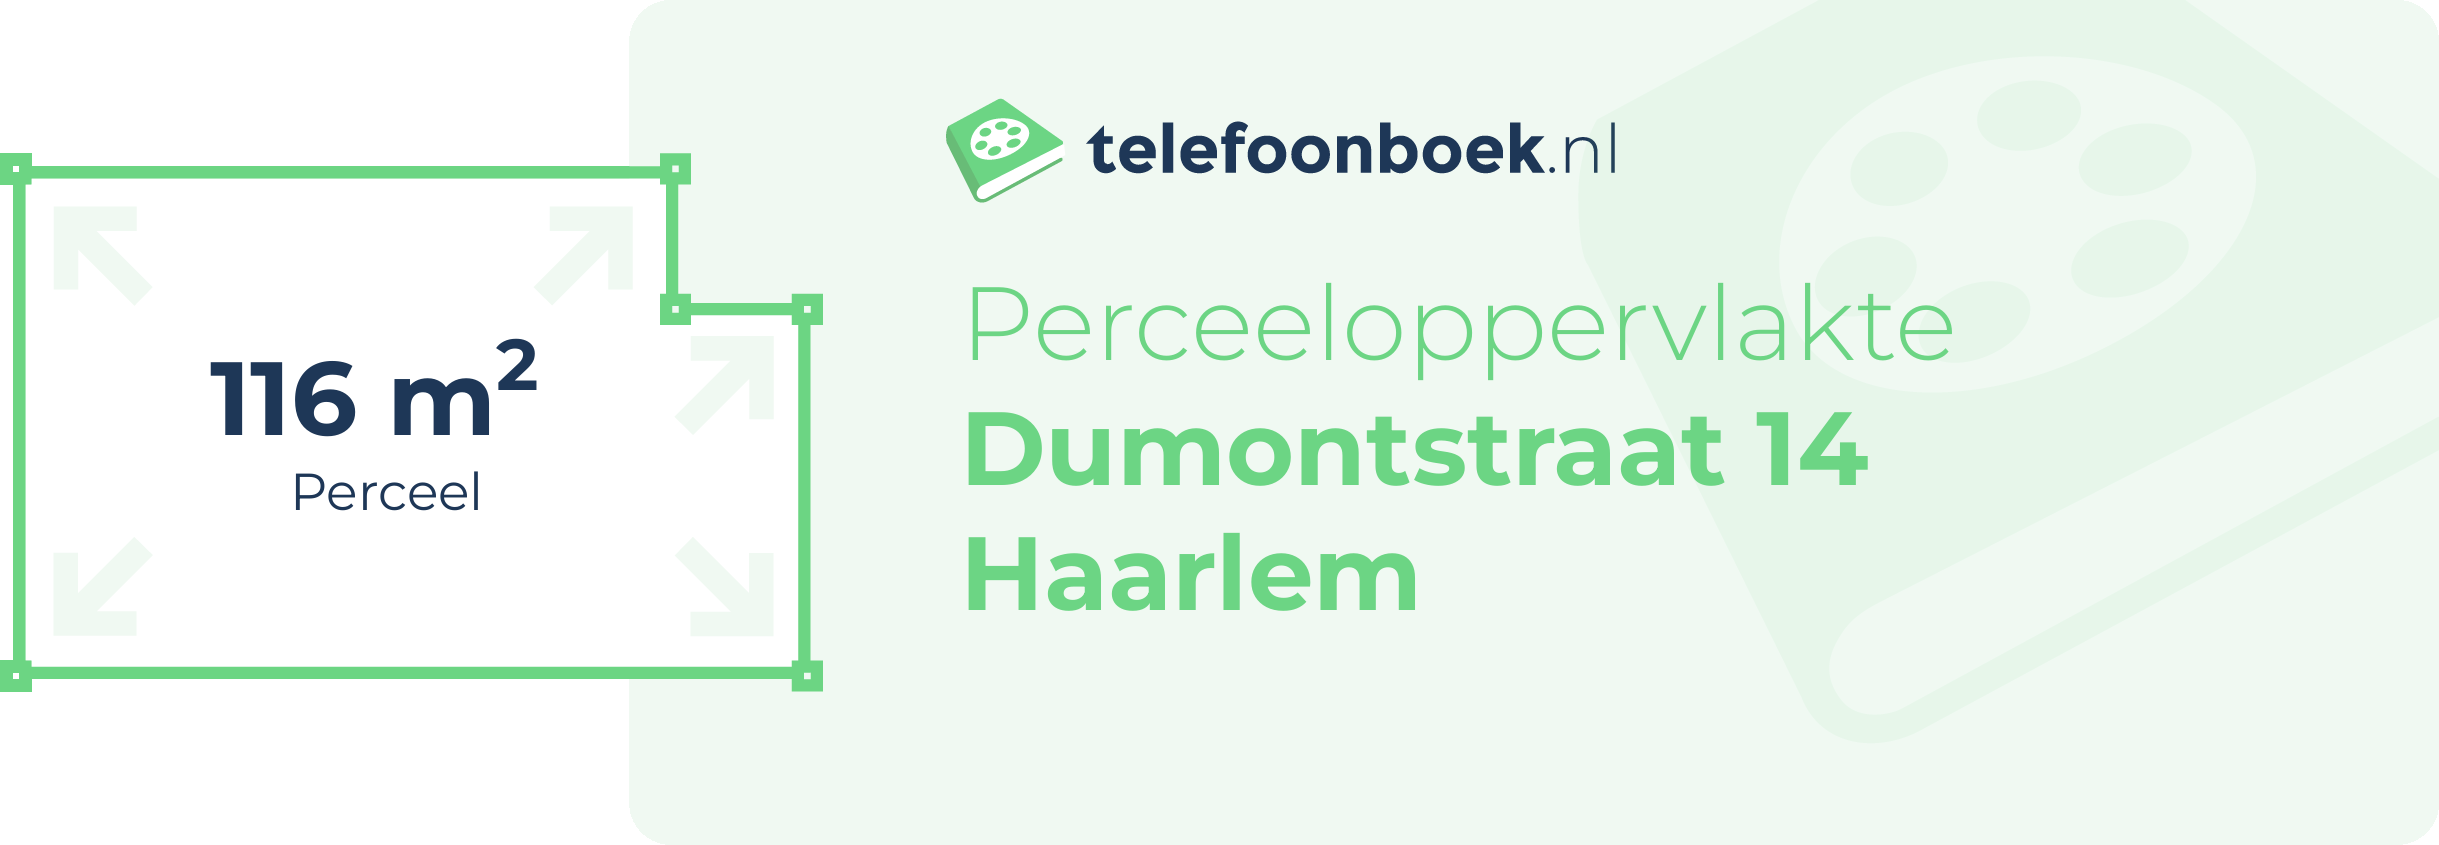 Perceeloppervlakte Dumontstraat 14 Haarlem